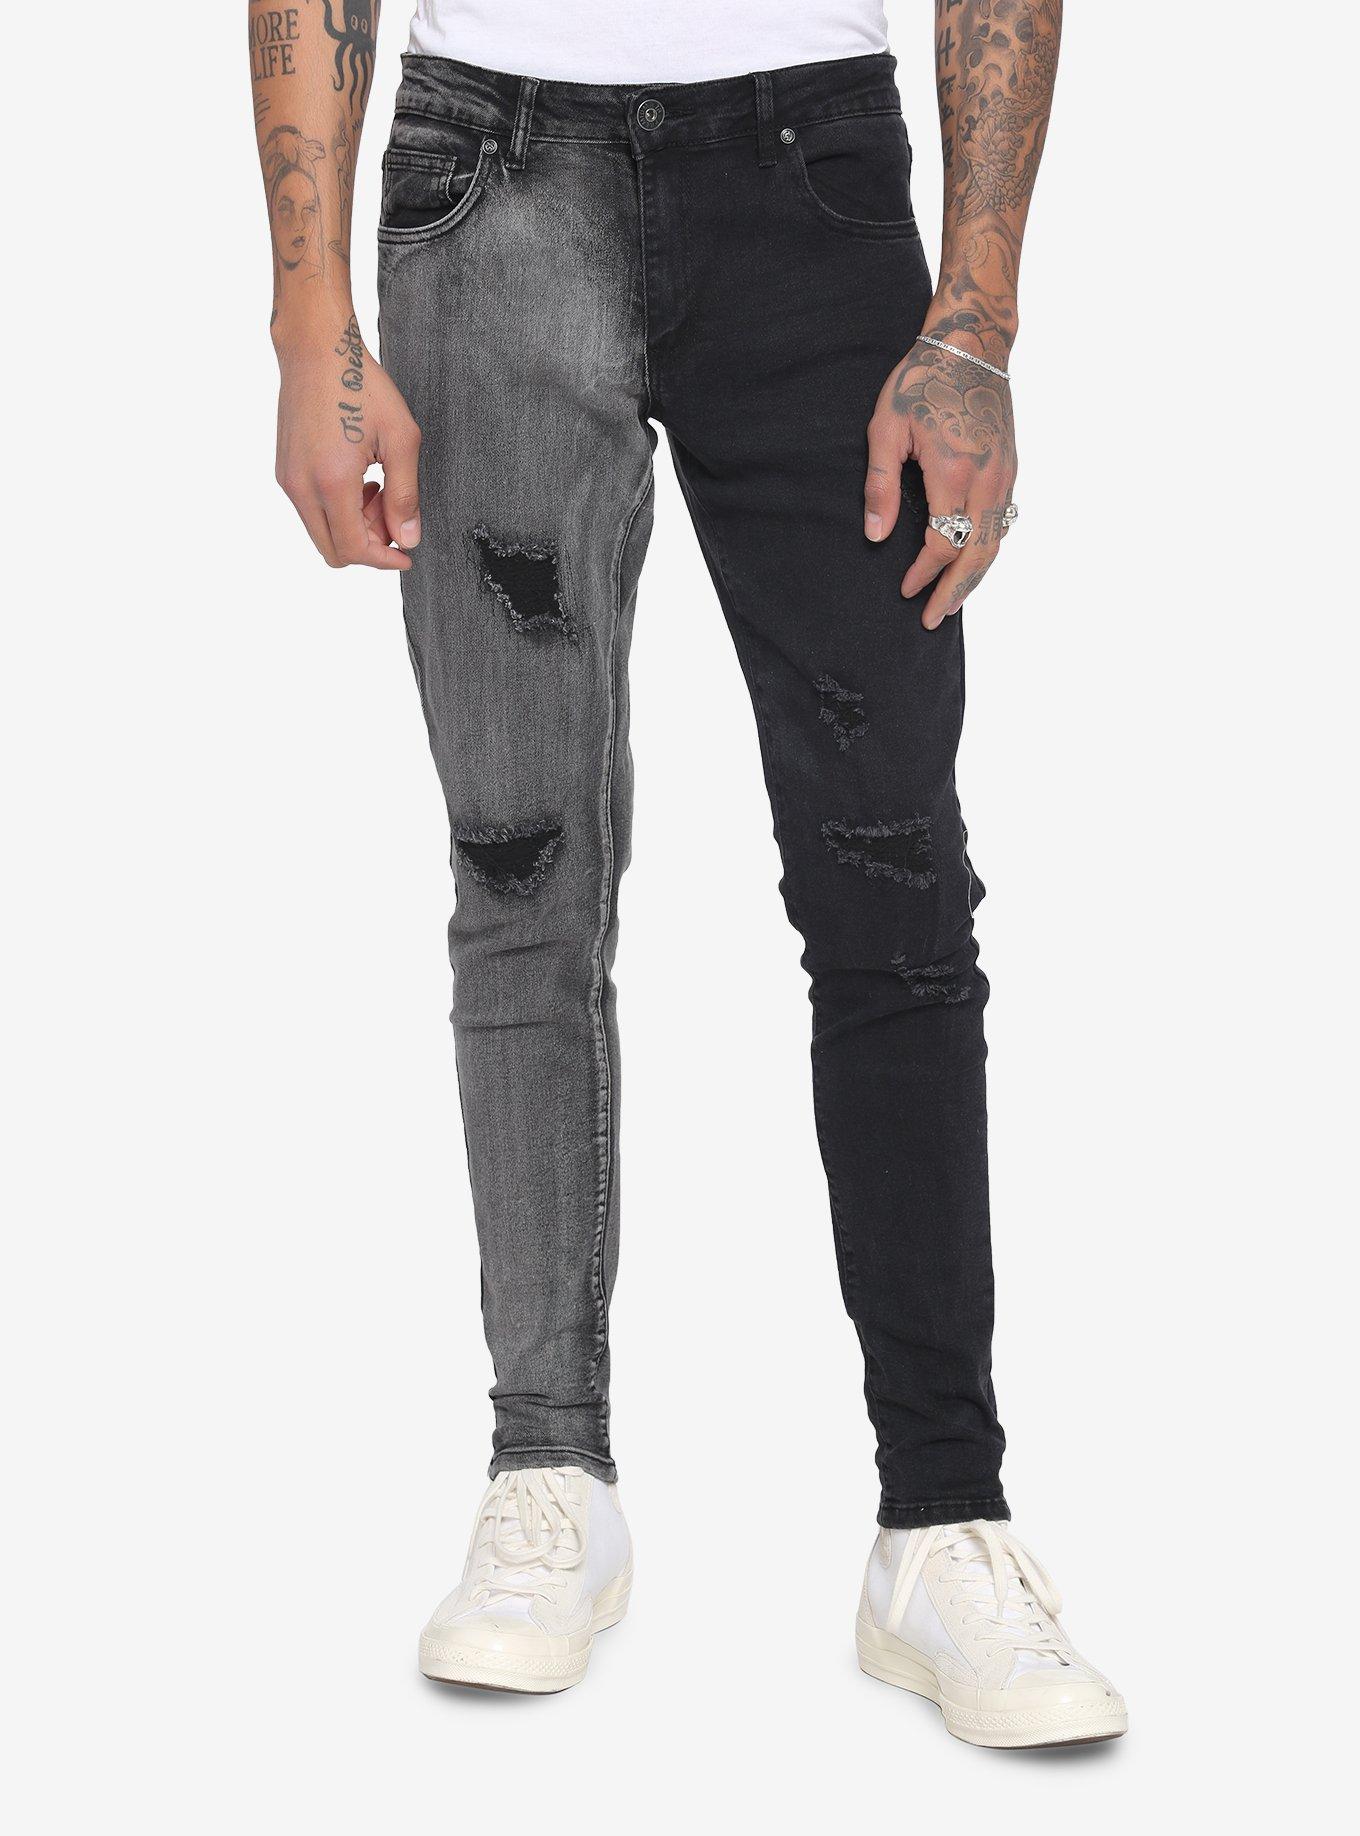 Black & Grey Wash Split Leg Skinny Jeans, BLACK, hi-res